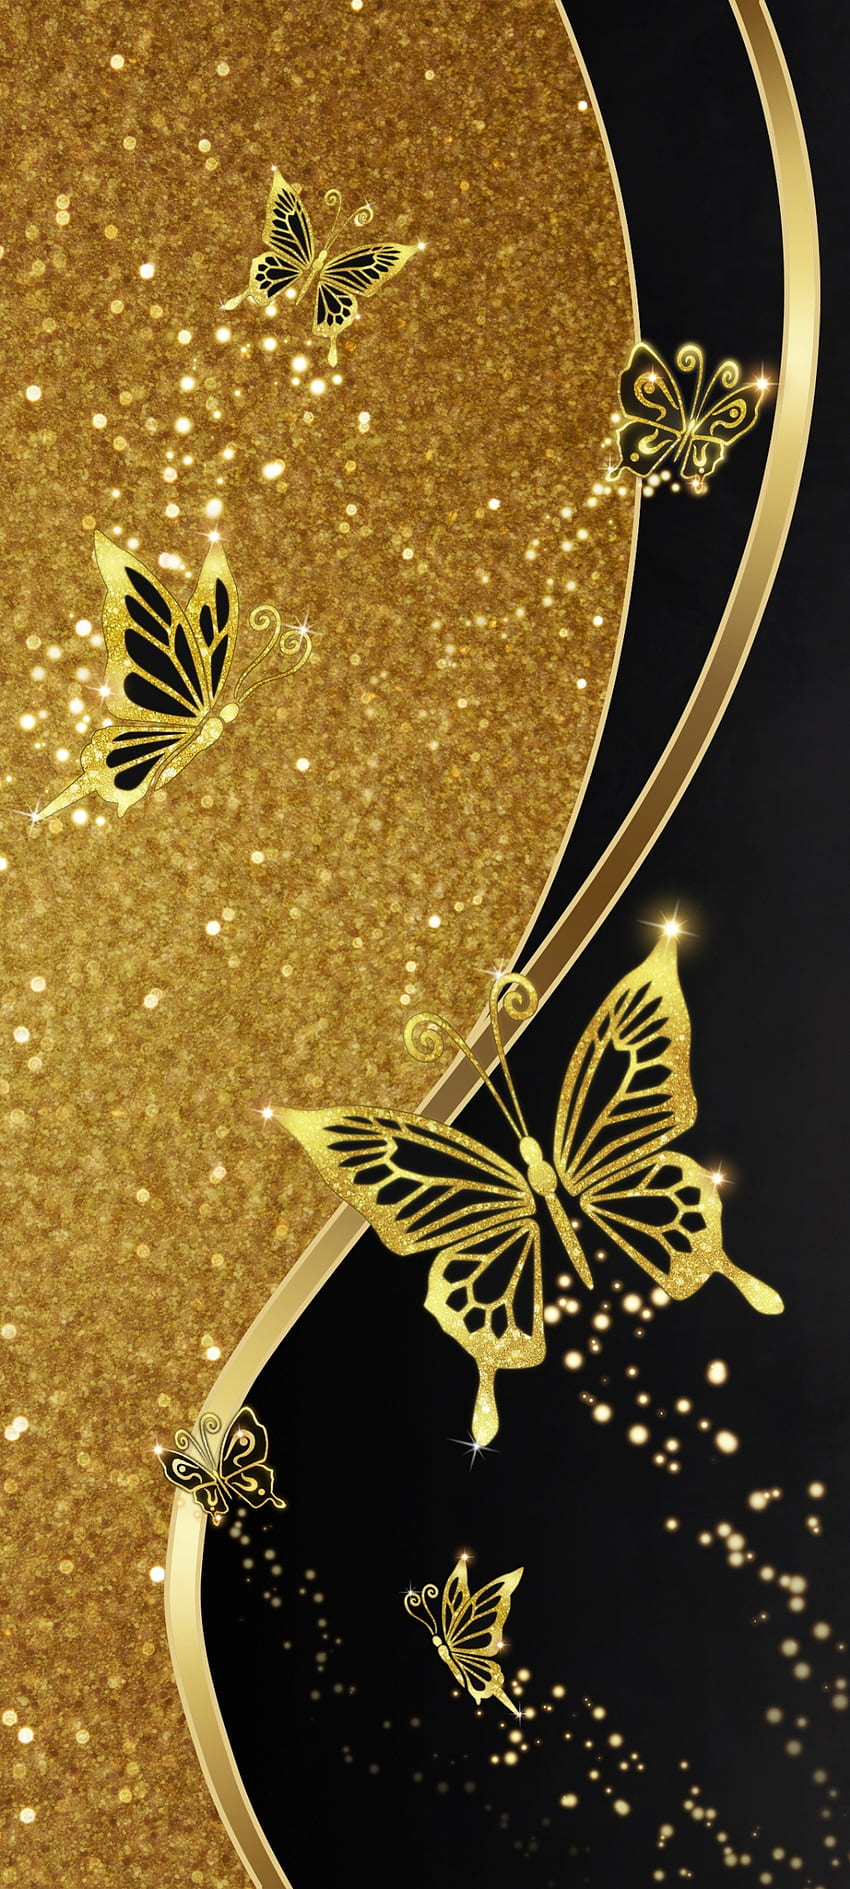 Free Golden Butterfly Wallpaper  Download in JPG  Templatenet